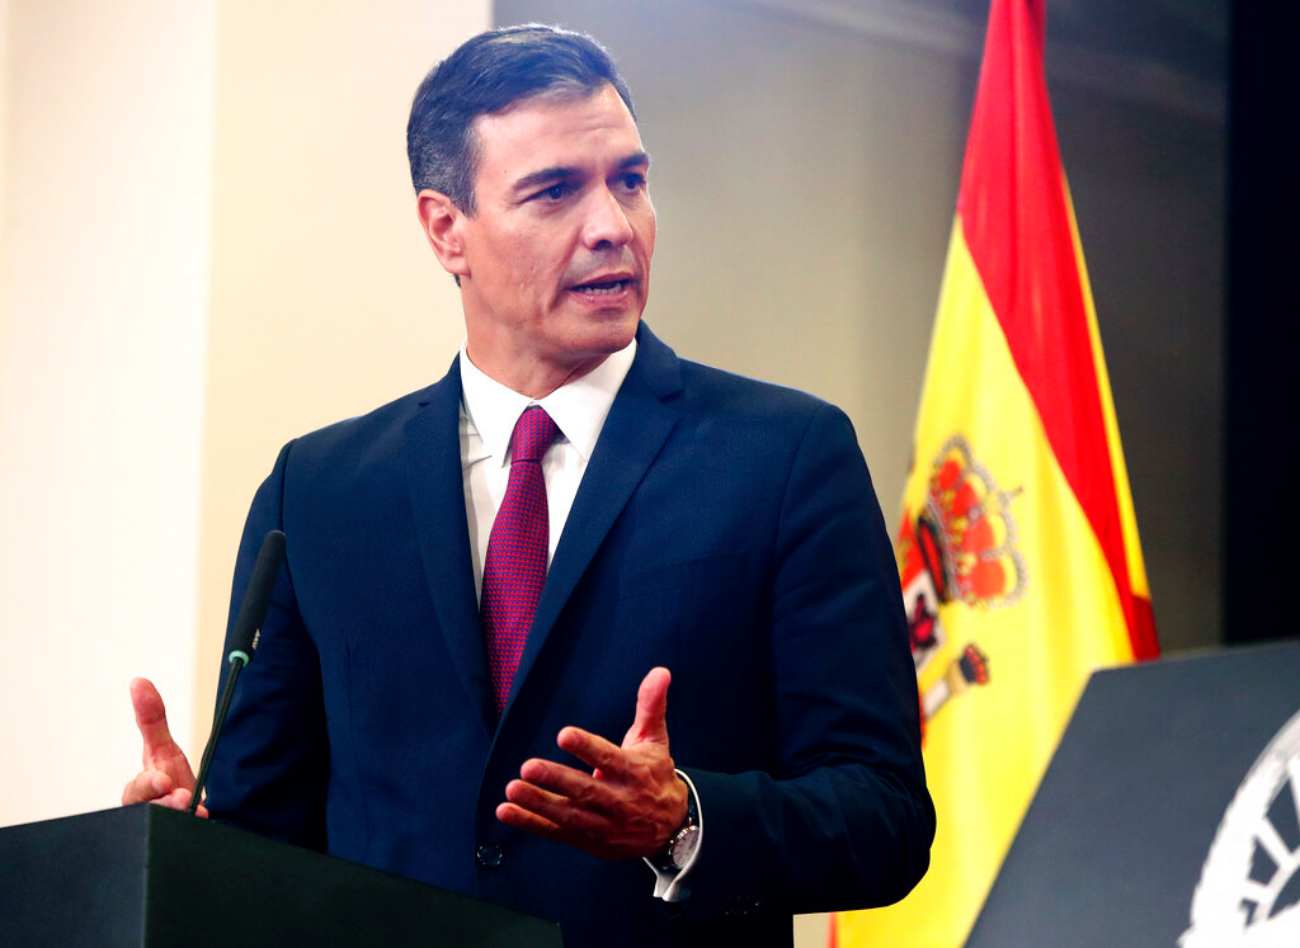 Θετικός στον κορονοϊό ο πρωθυπουργός της Ισπανίας Πέδρο Σάντσεθ